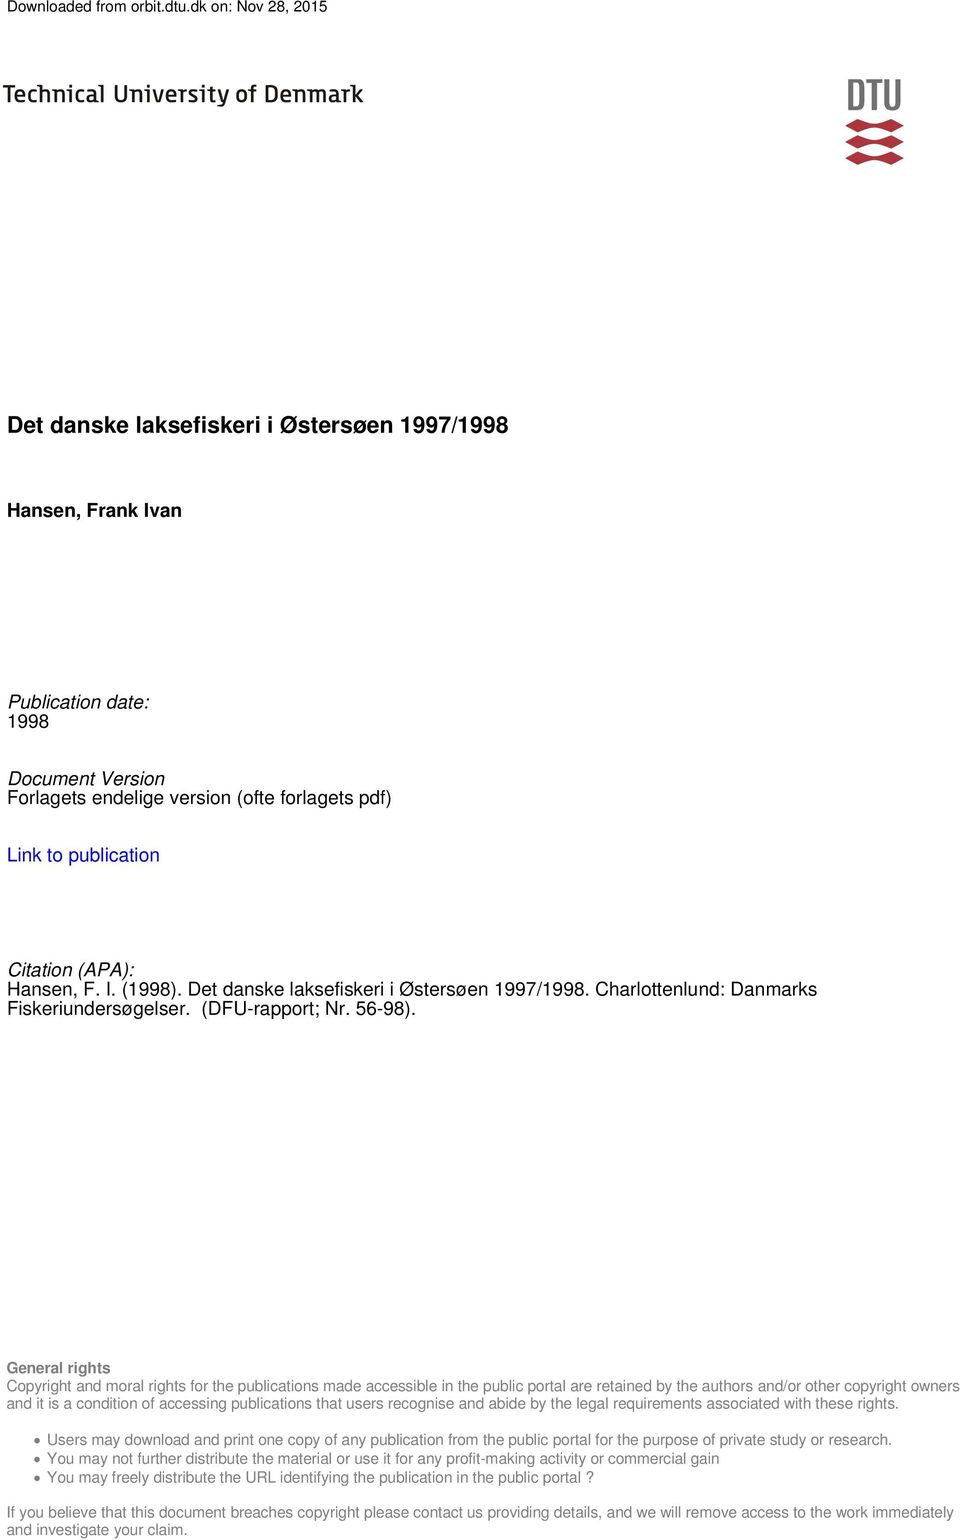 Citation (APA): Hansen, F. I. (1998). Det danske laksefiskeri i Østersøen 1997/1998. Charlottenlund: Danmarks Fiskeriundersøgelser. (DFU-rapport; Nr. 56-98).